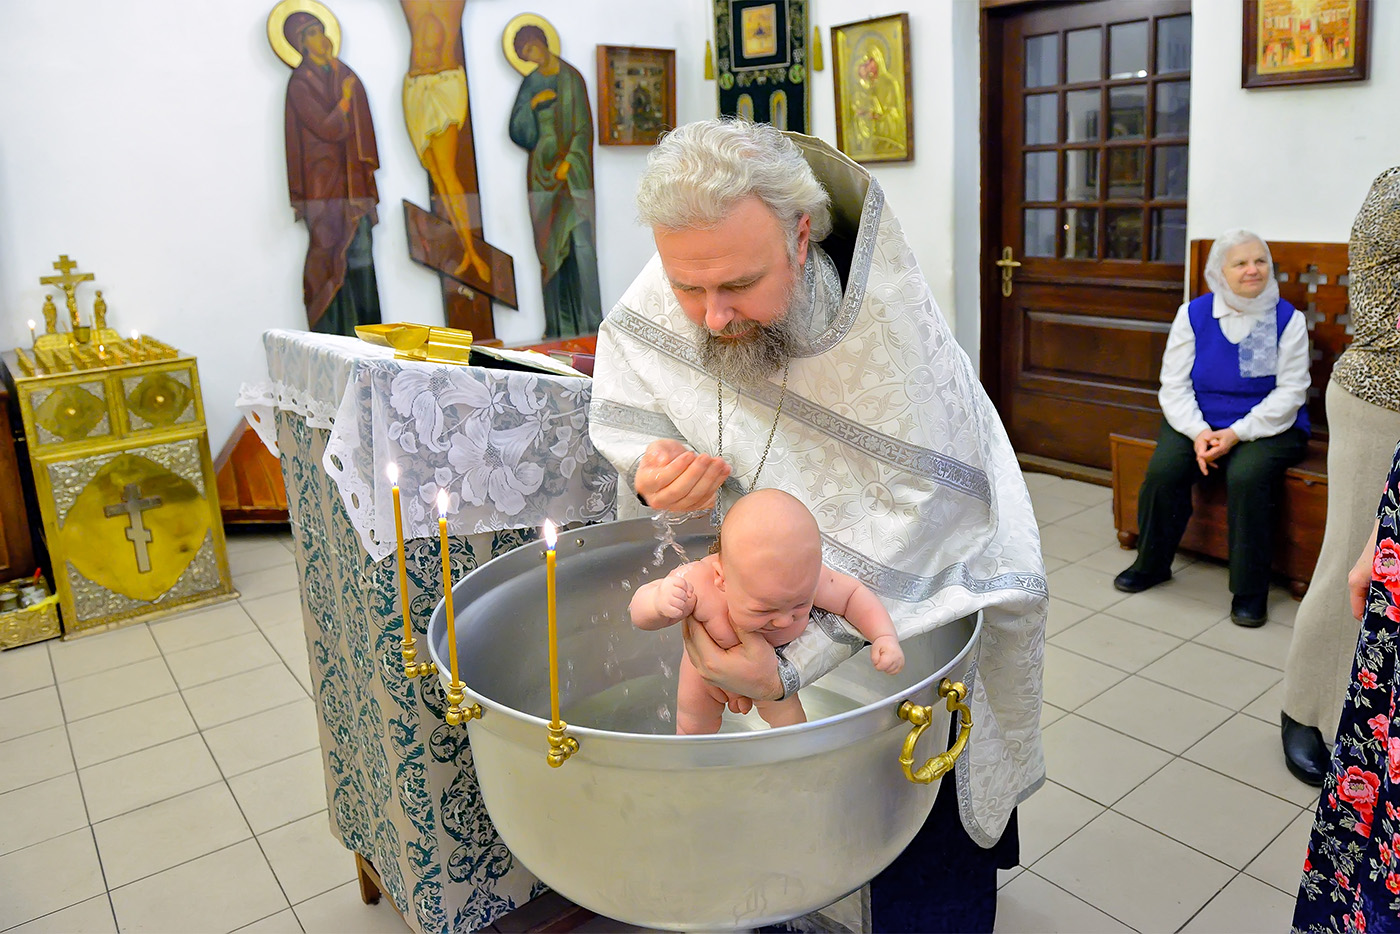 фотограф на крещение, фотограф на крещение ребенка, фотограф на крещение москва, фотограф на крещение ребенка москва, детский фотограф на крещение, фотограф крестины, крещение фотосъемка, фотограф крестины москва